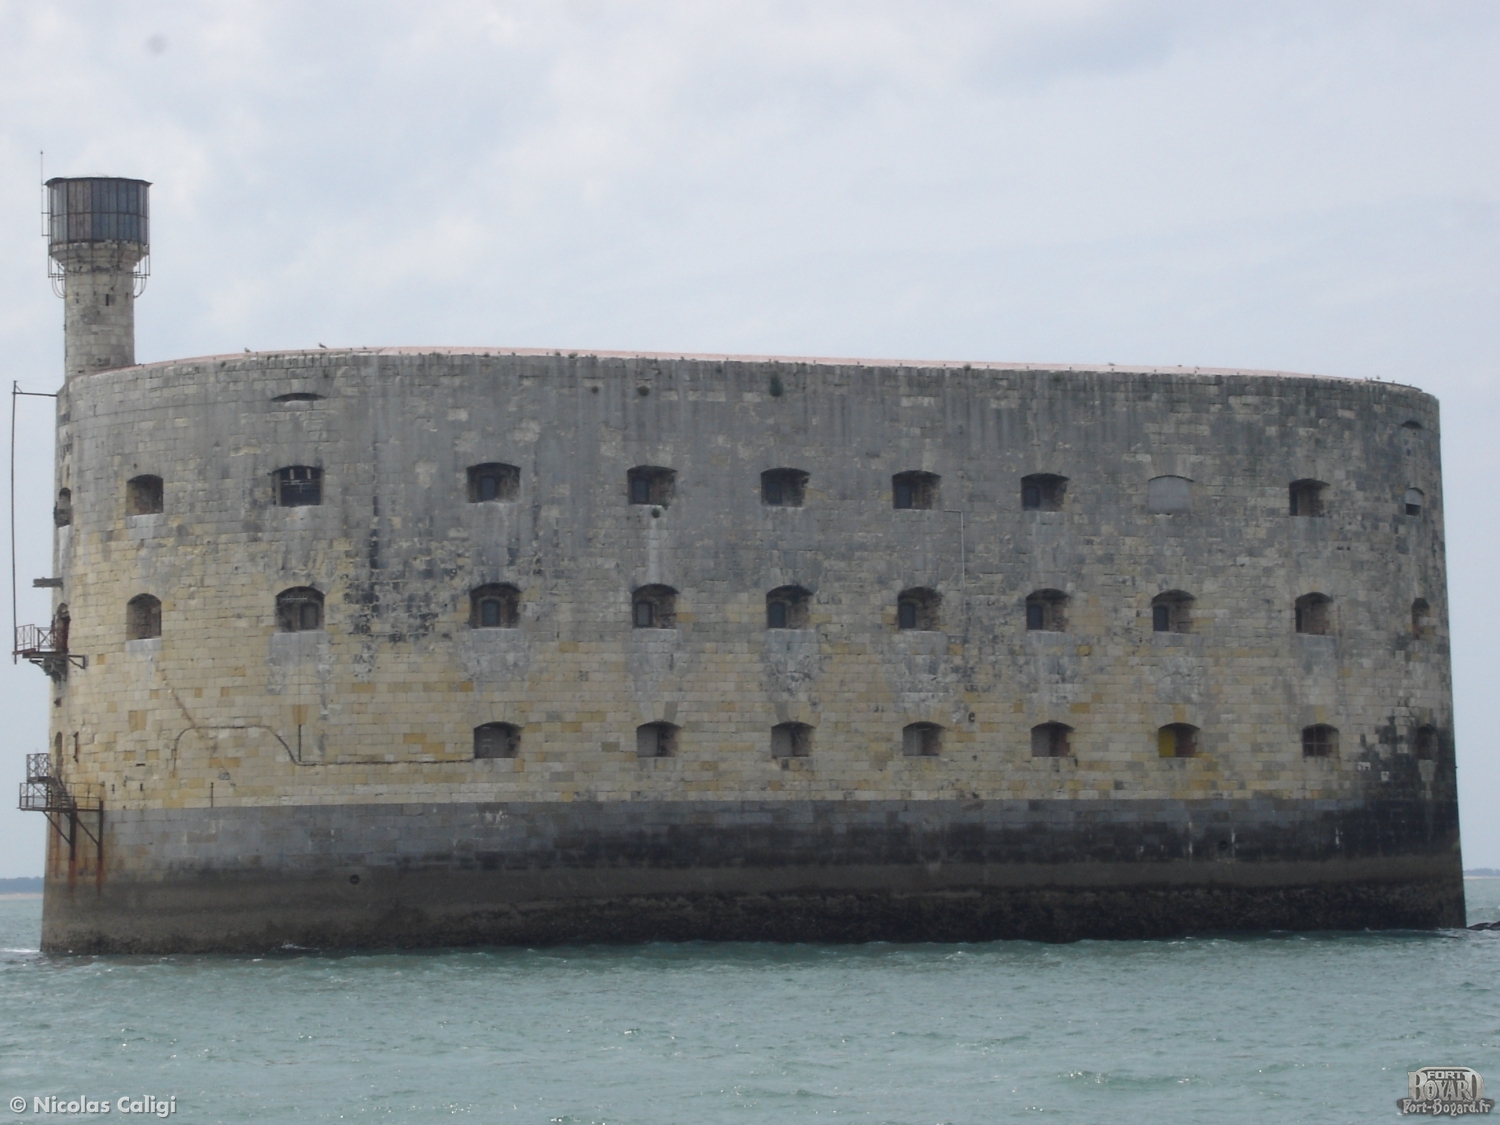 Le fort vu depuis le bateau(2009)